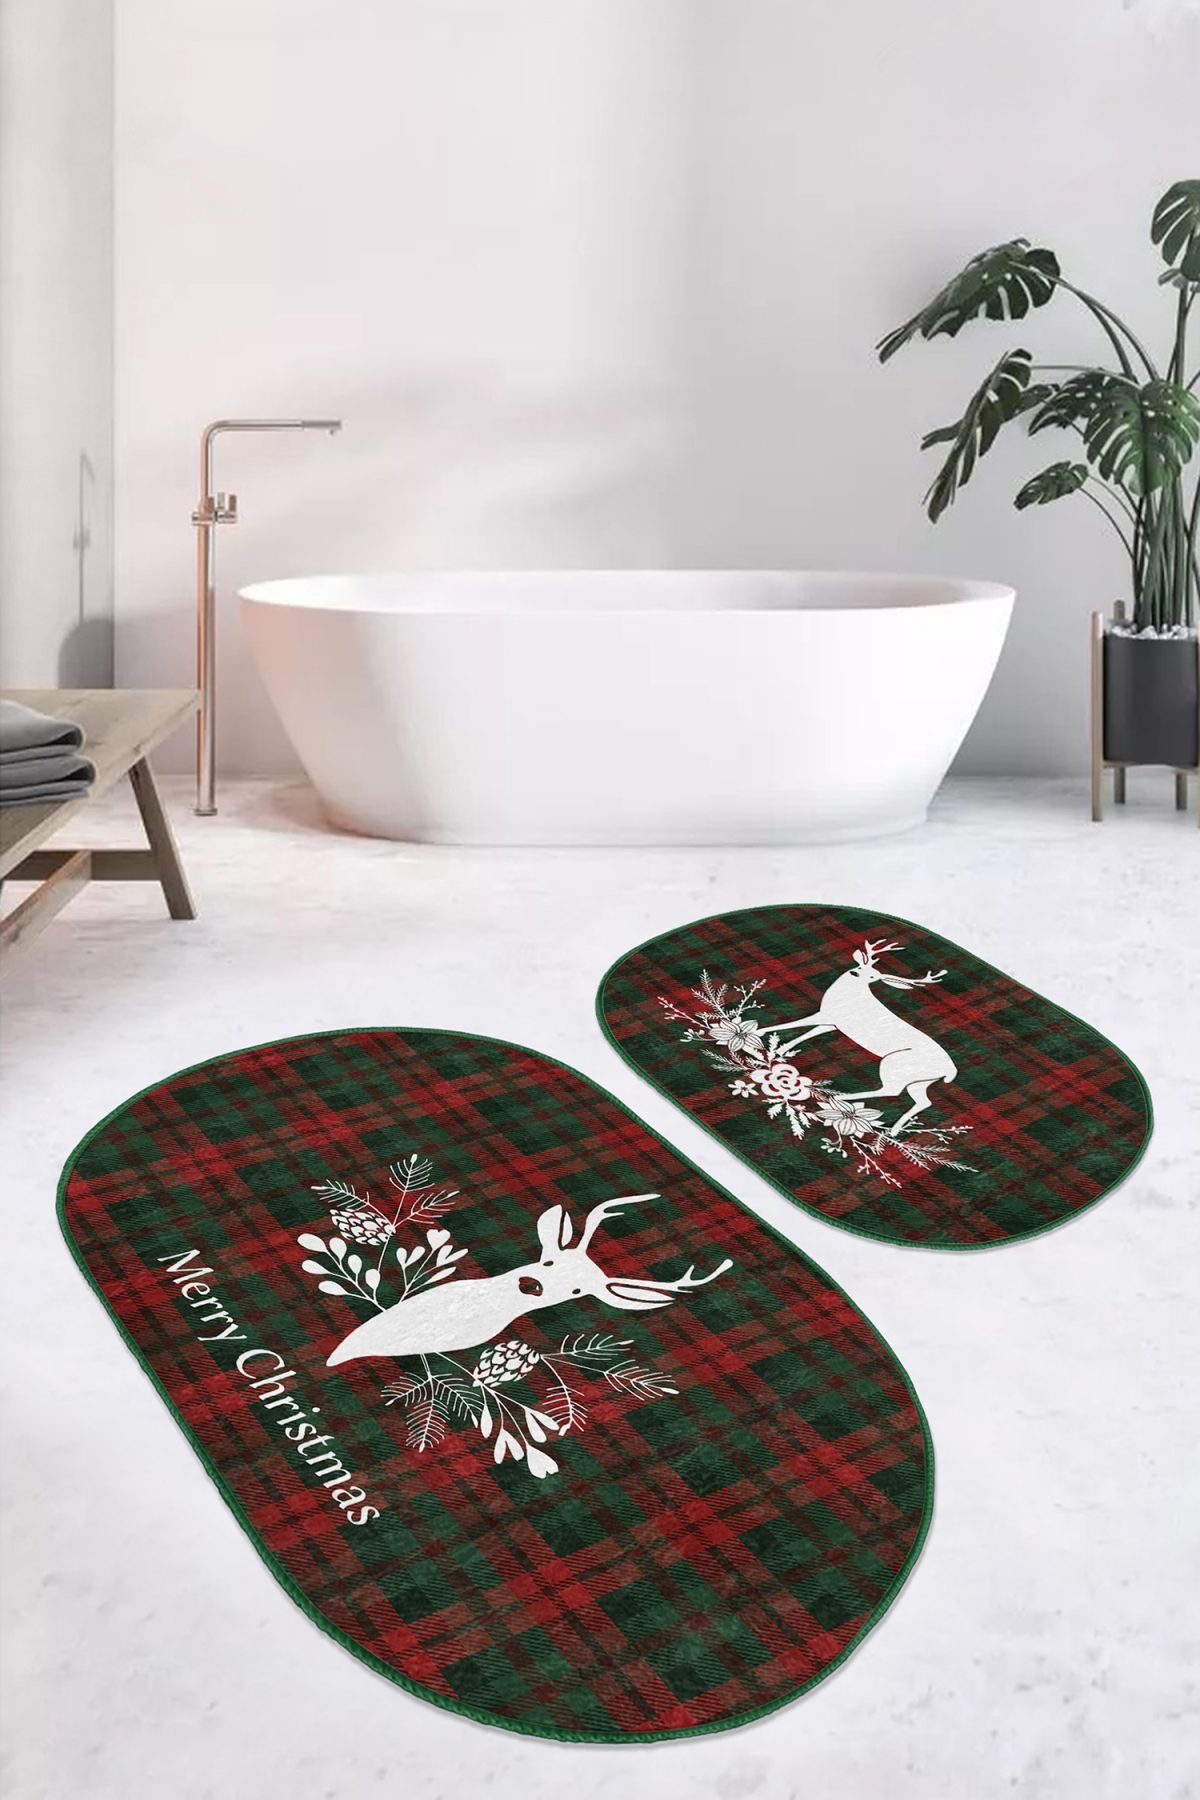 Mery Christmas Temalı Geyik Tasarımlı Dijital Baskılı 2'li Oval Kaymaz Tabanlı Banyo & Mutfak Paspas Takımı Realhomes